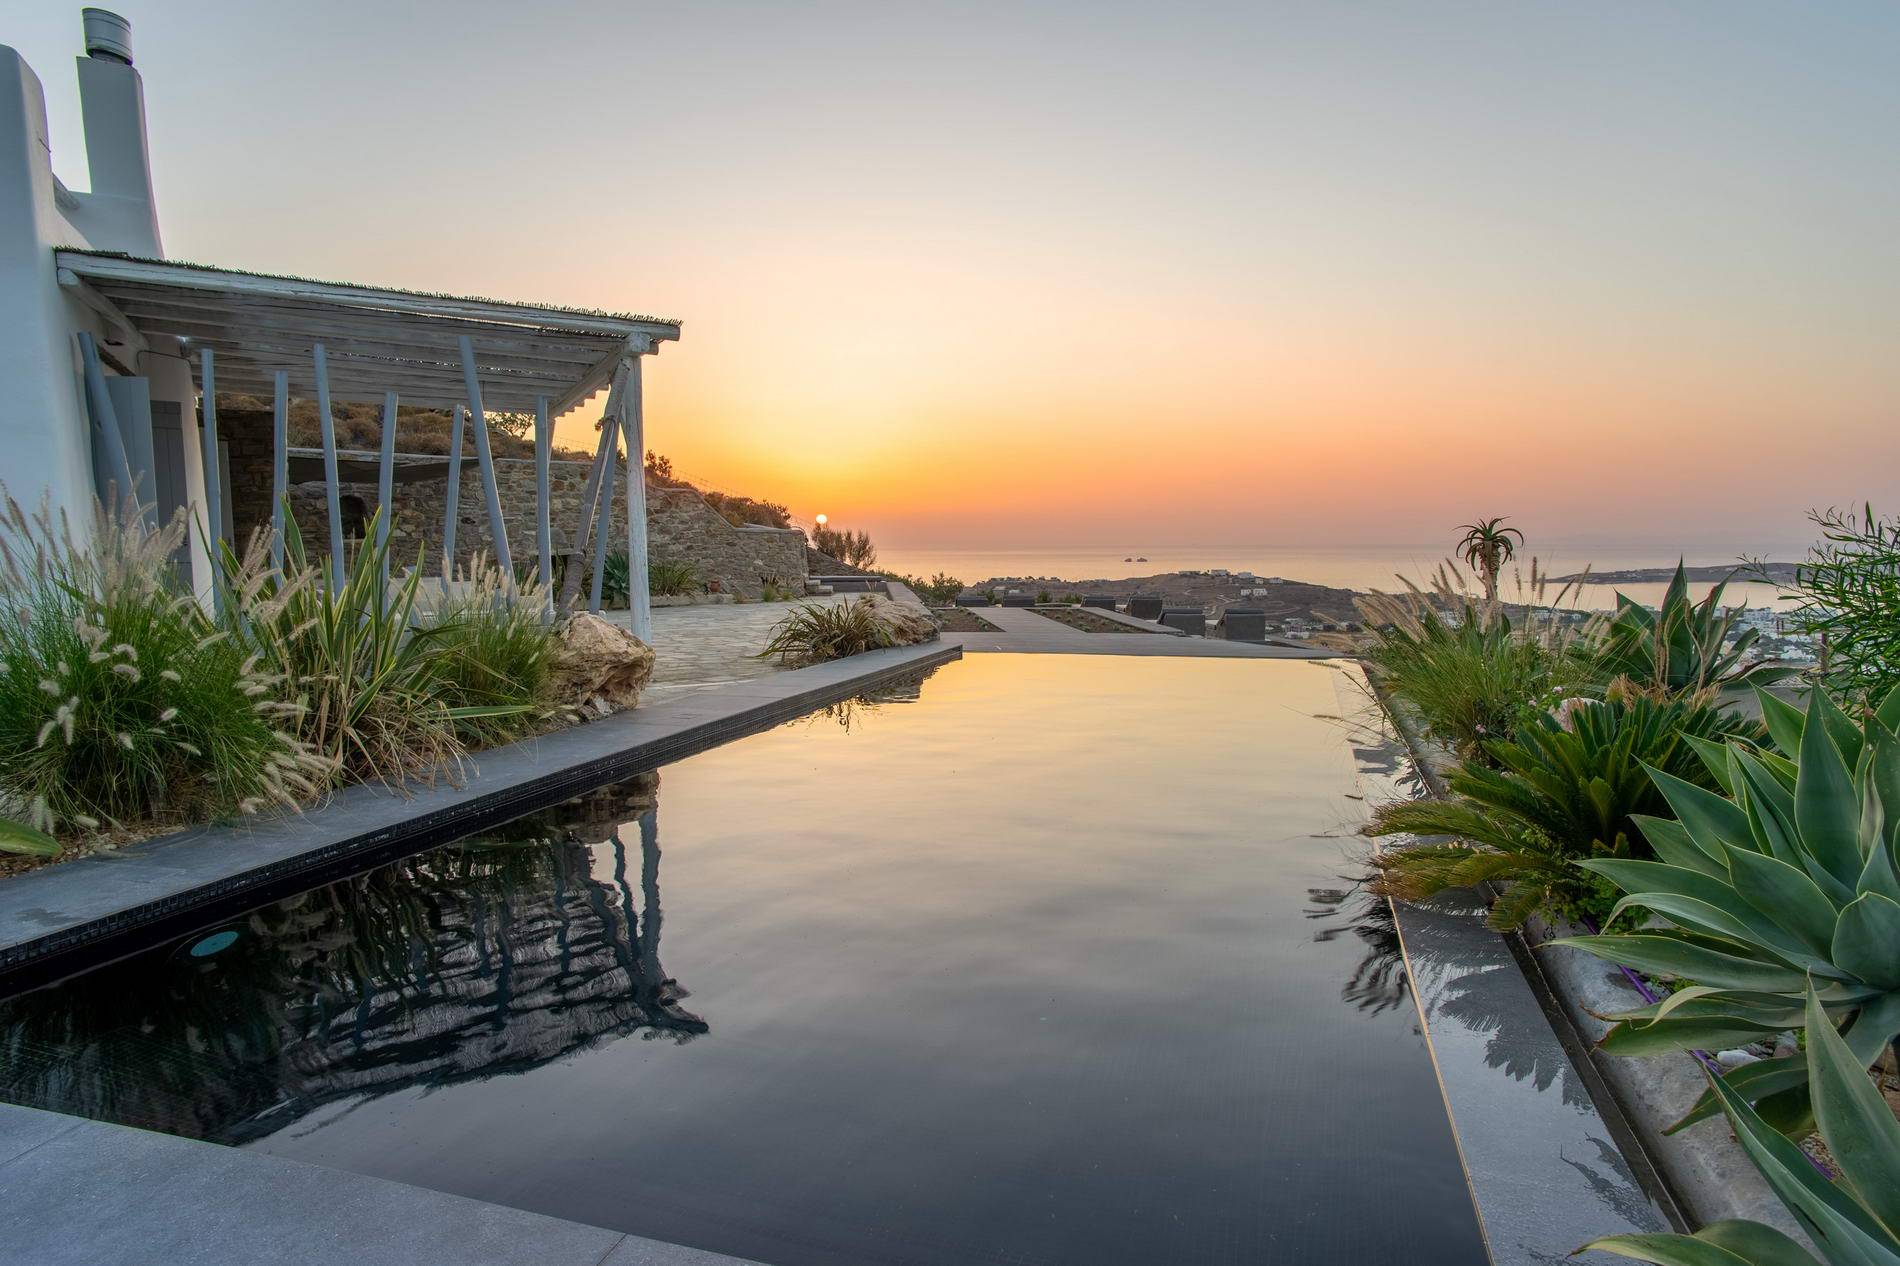 Sunset Villa Paros Pool - Sunset View